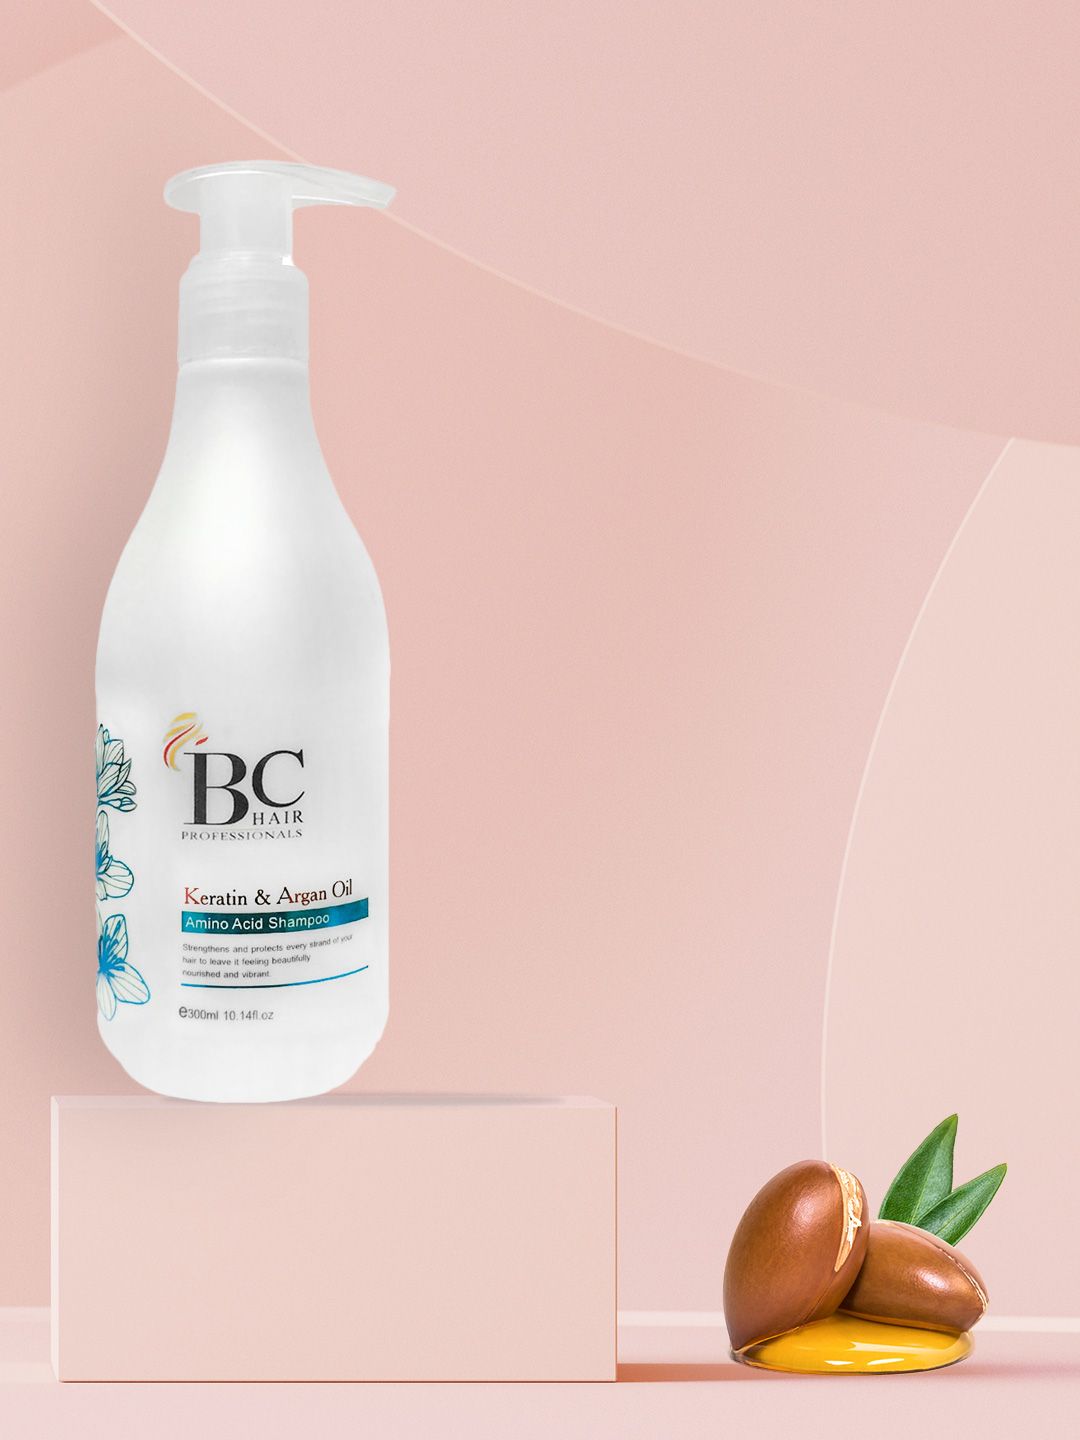 Berina BC Amino Acid Shampoo with Kertain & Argan Oil Extract - 300ml Price in India